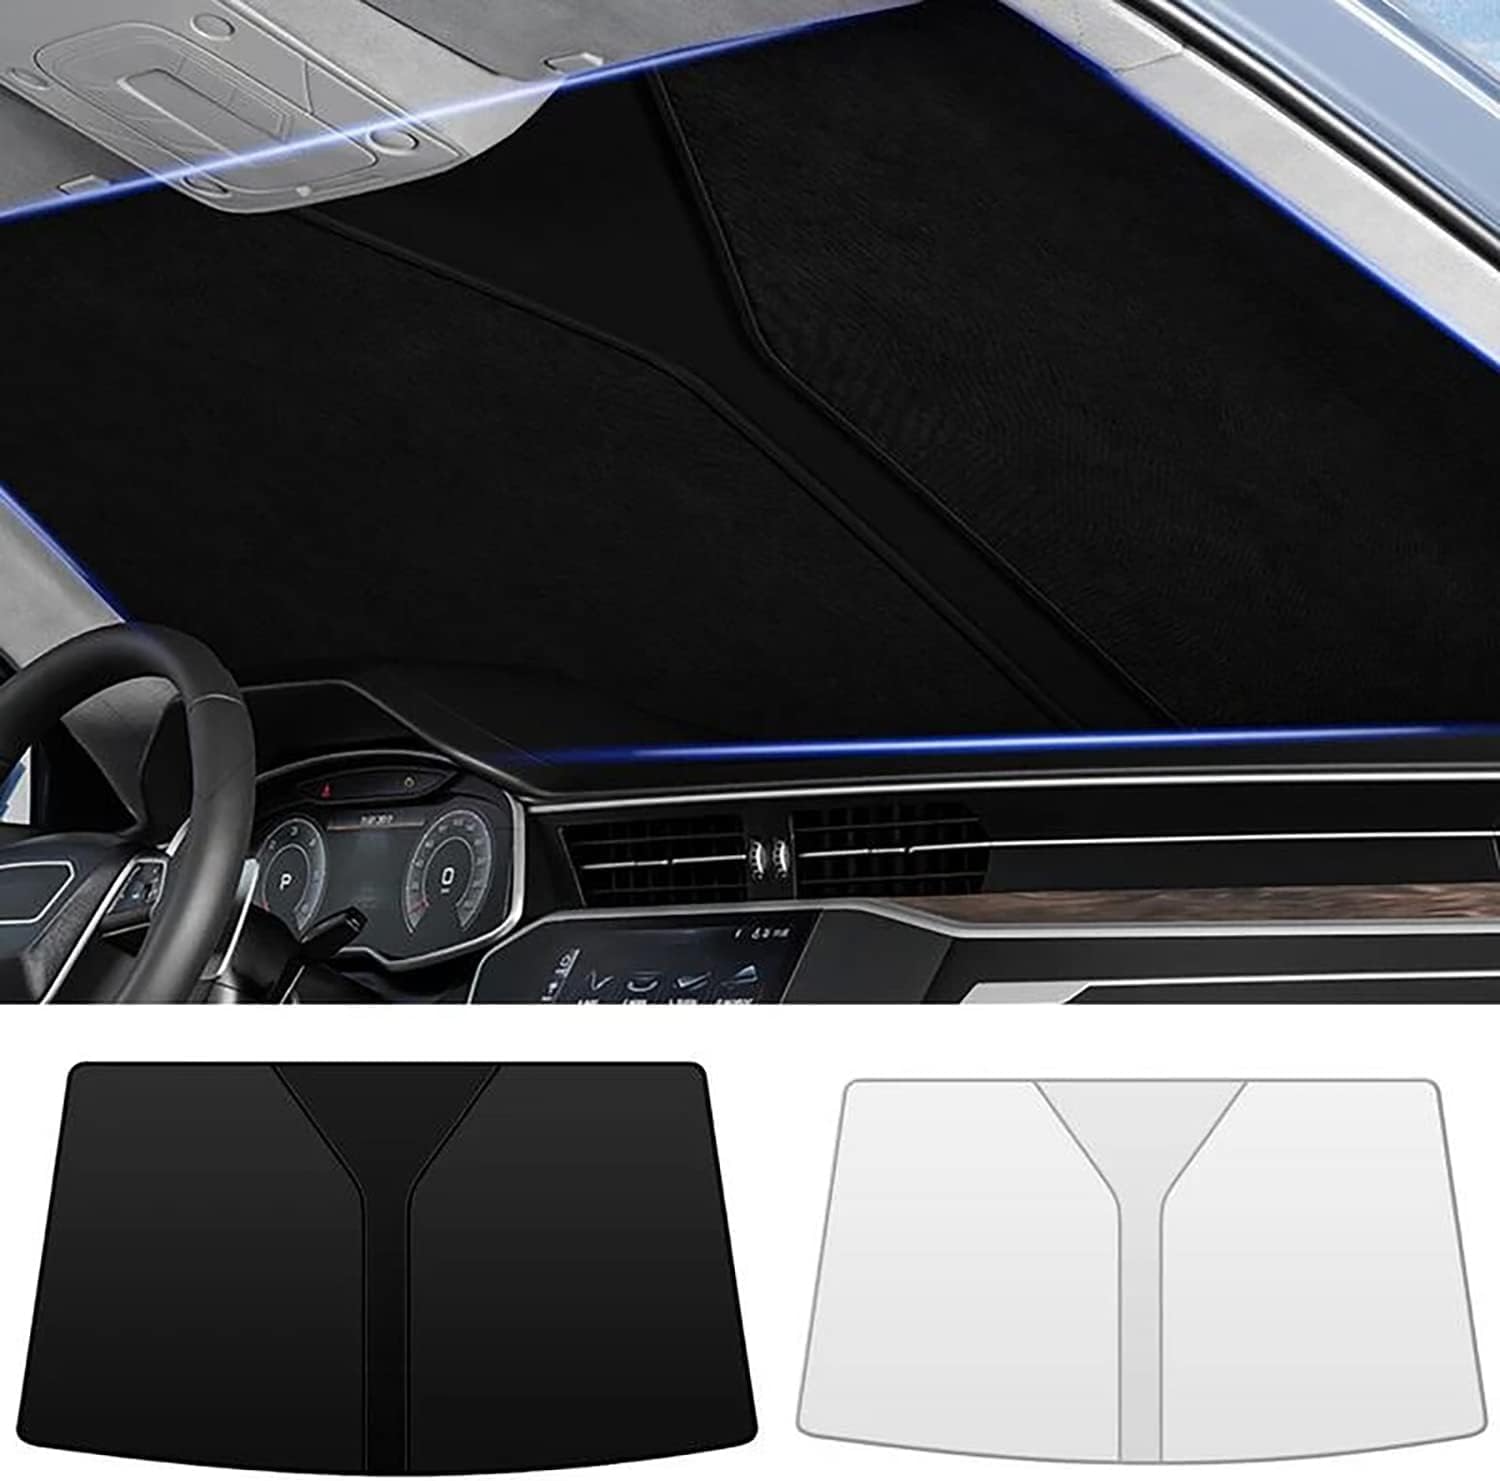 Frontscheiben Sonnenschutz Passend für VW Touareg I (7L) 2002-2010, Hitzeschutz Auto UV-Reflexion, Faltbares Design, Einfache Lagerung,Black von WGZNYN